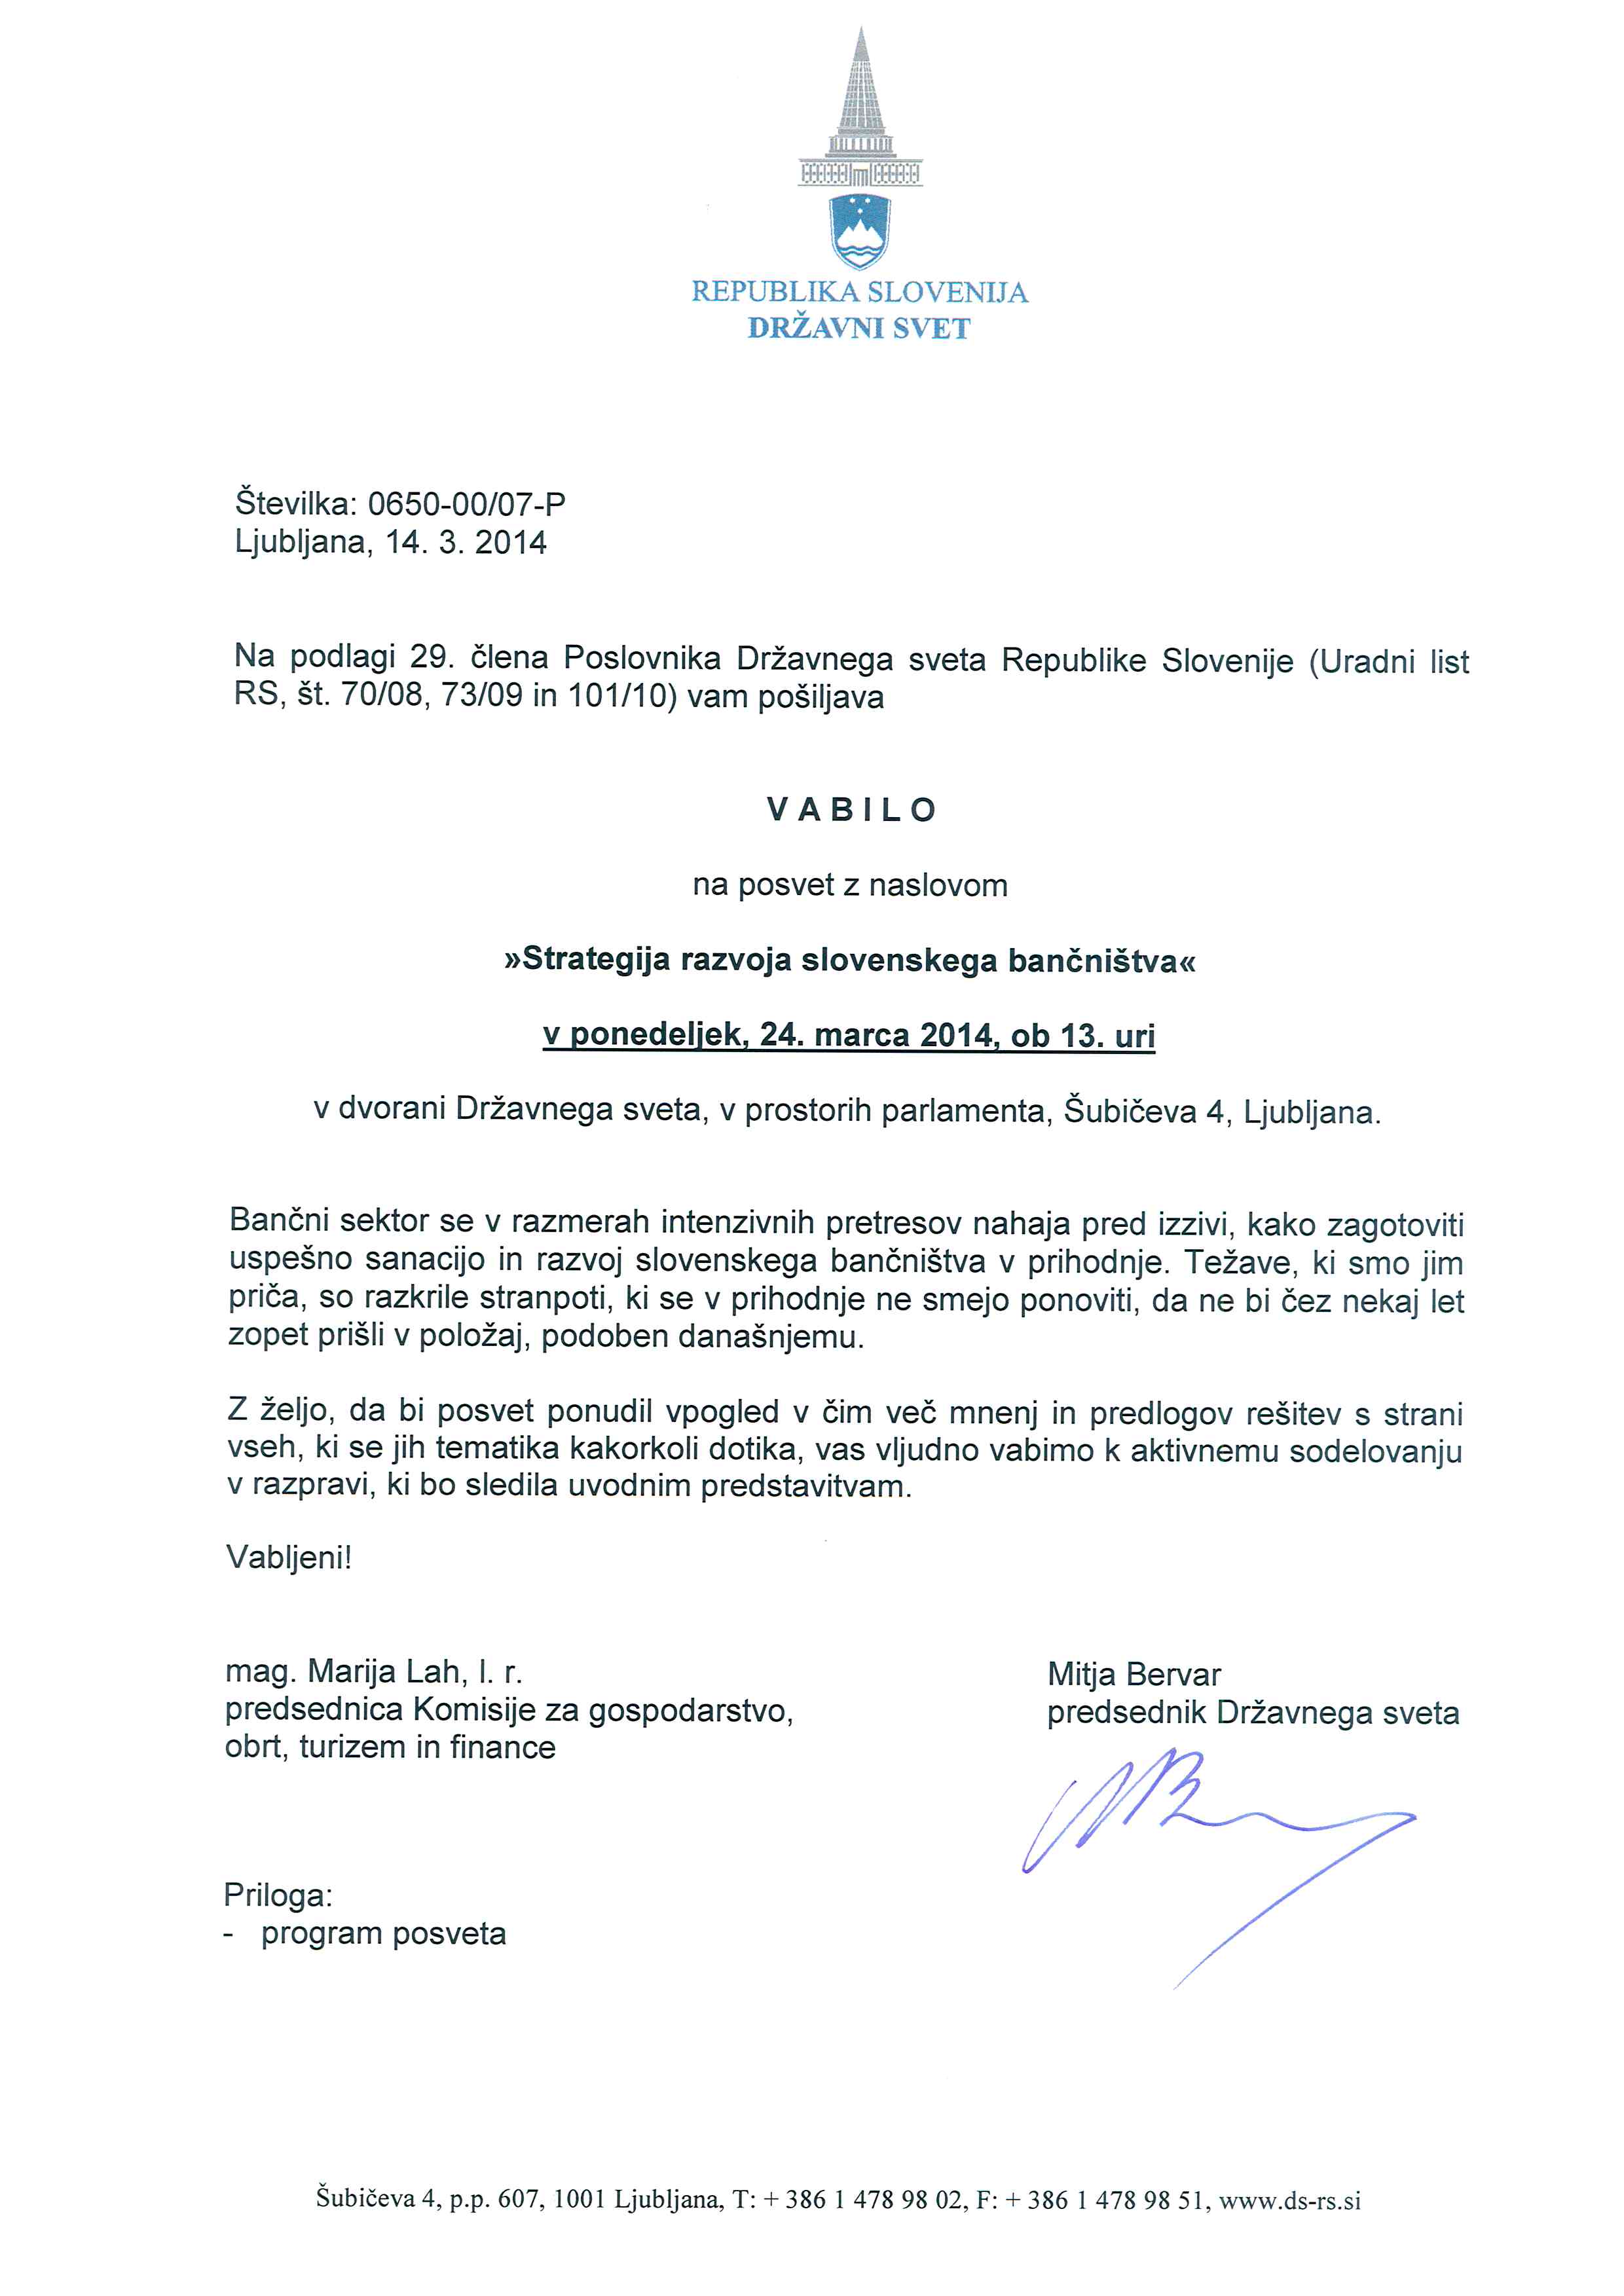 Vabilo na posvet Strategija razvoja slovenskega bančništva_24mar2014_Page_1